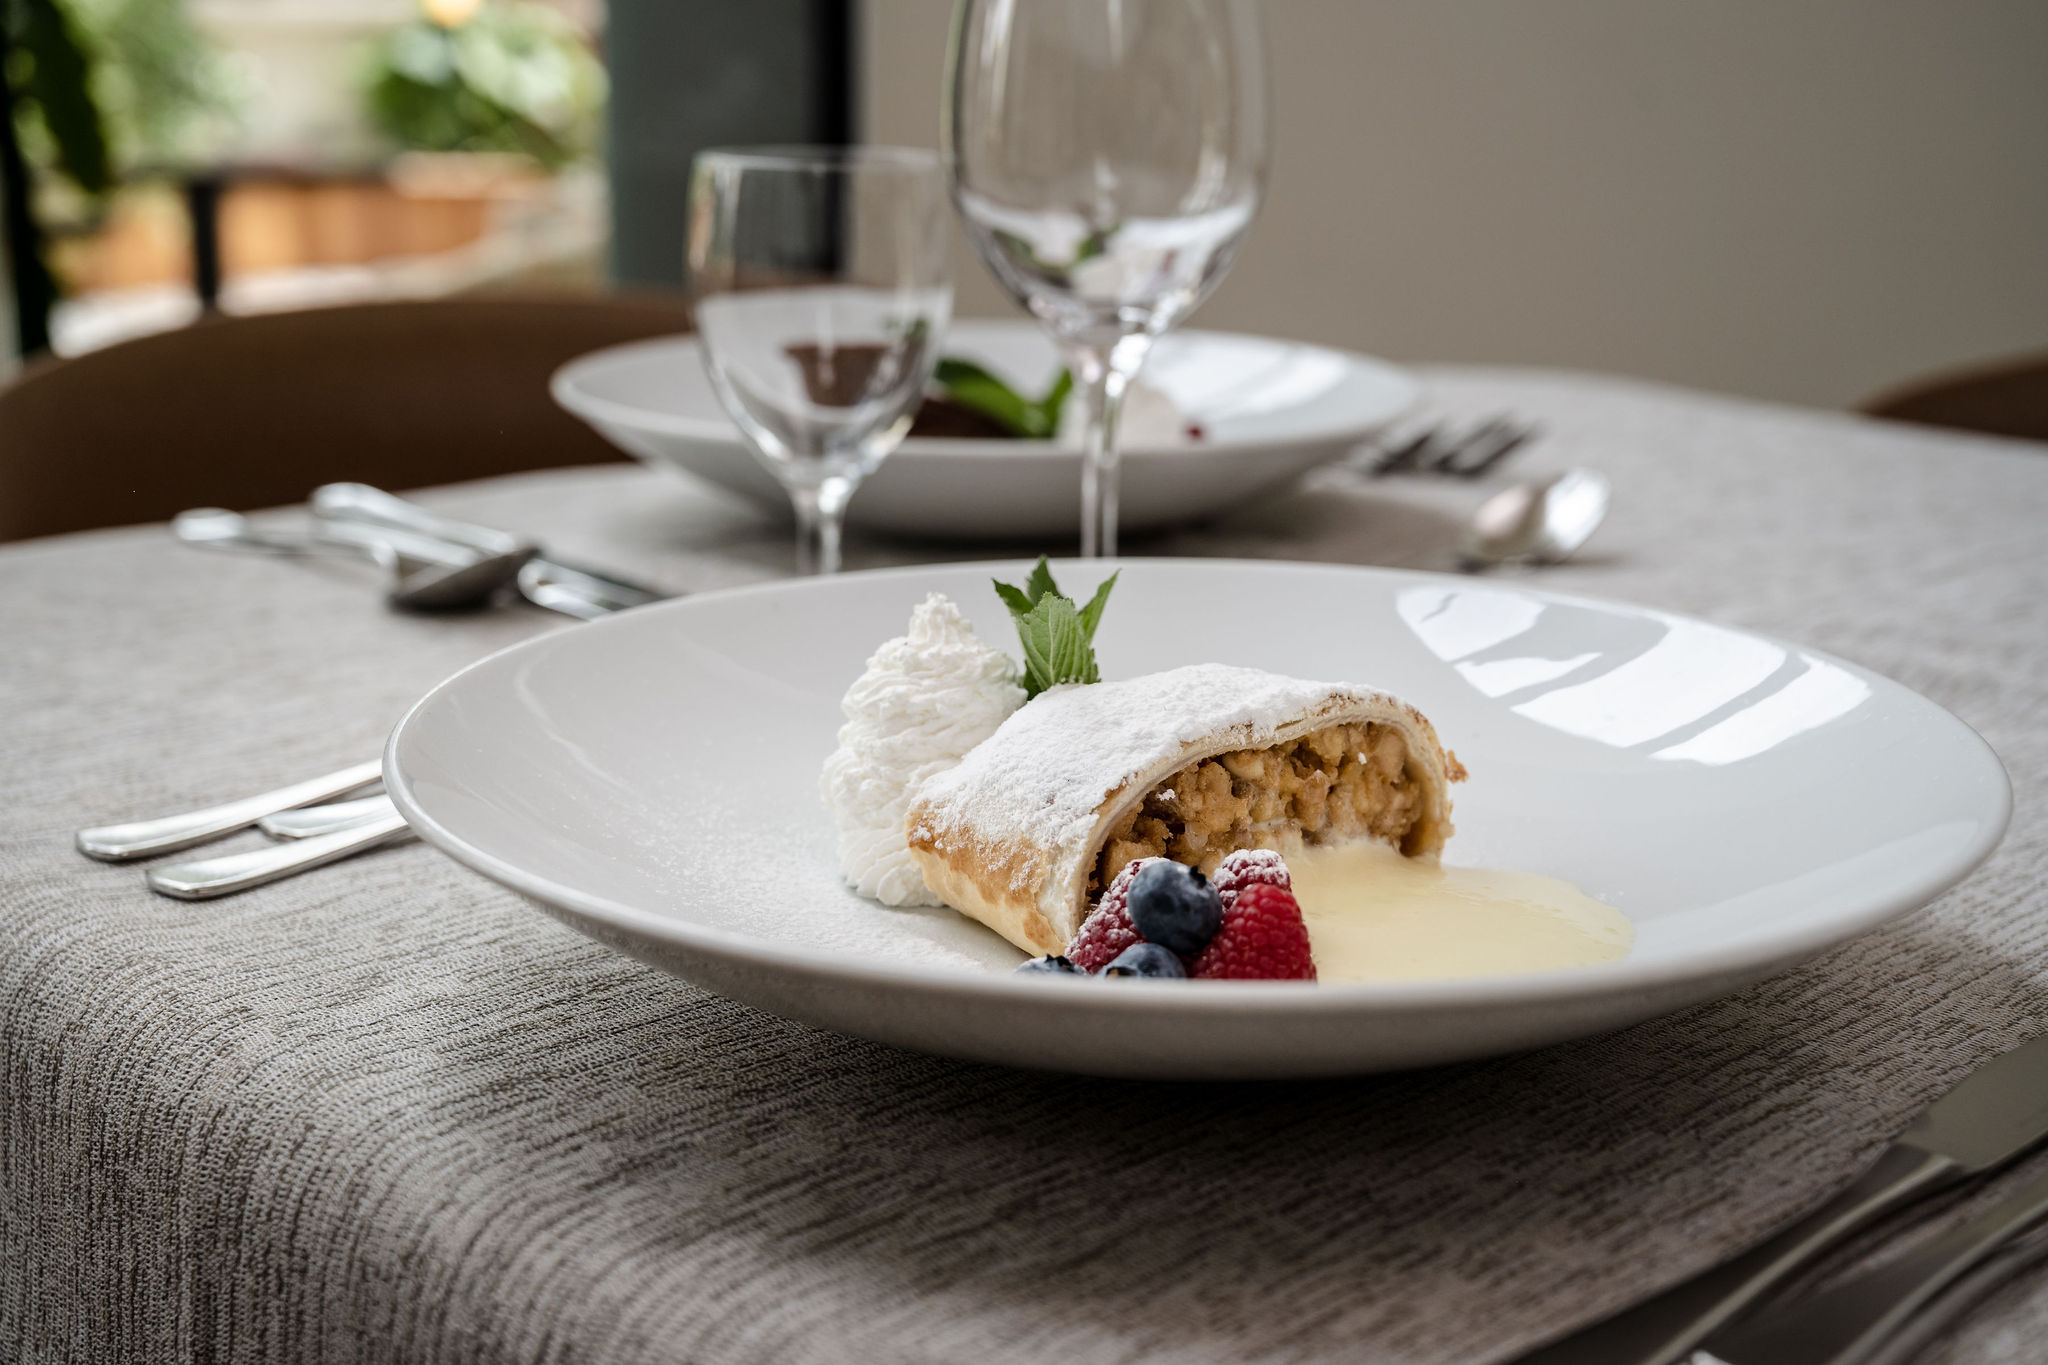 Il menù del nostro AlpHoliday prevede una ricca colazione salutare, tante proposte e specialità preparate al momento.